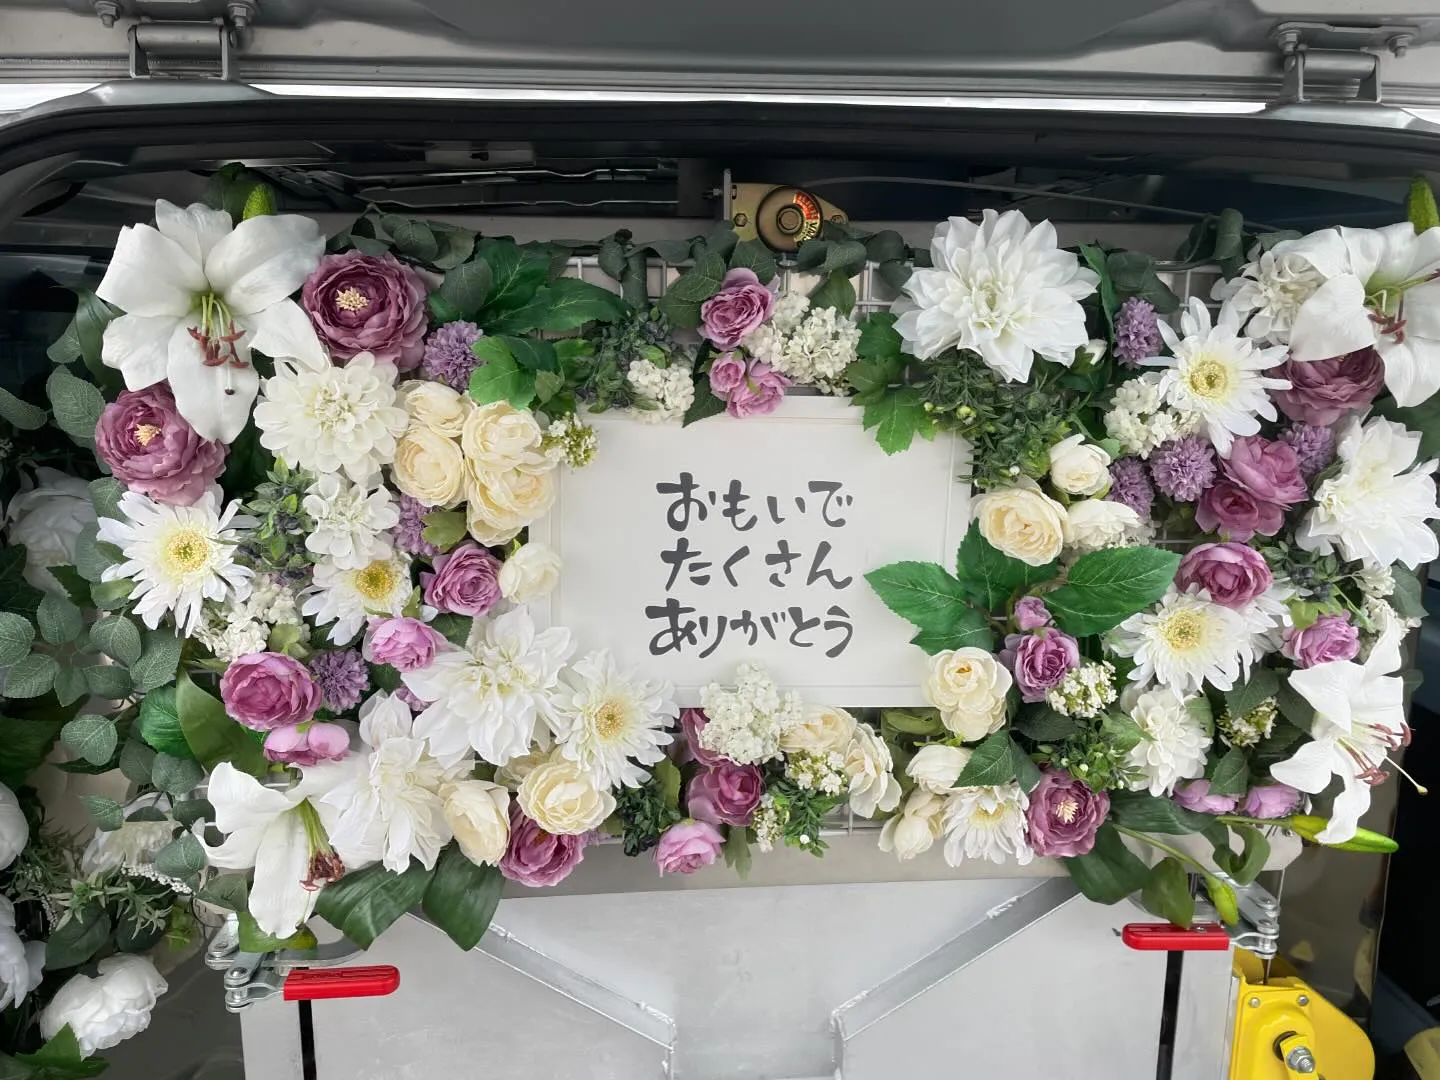 東京都八王子市にてキャバリアちゃんのご火葬に伺いました。